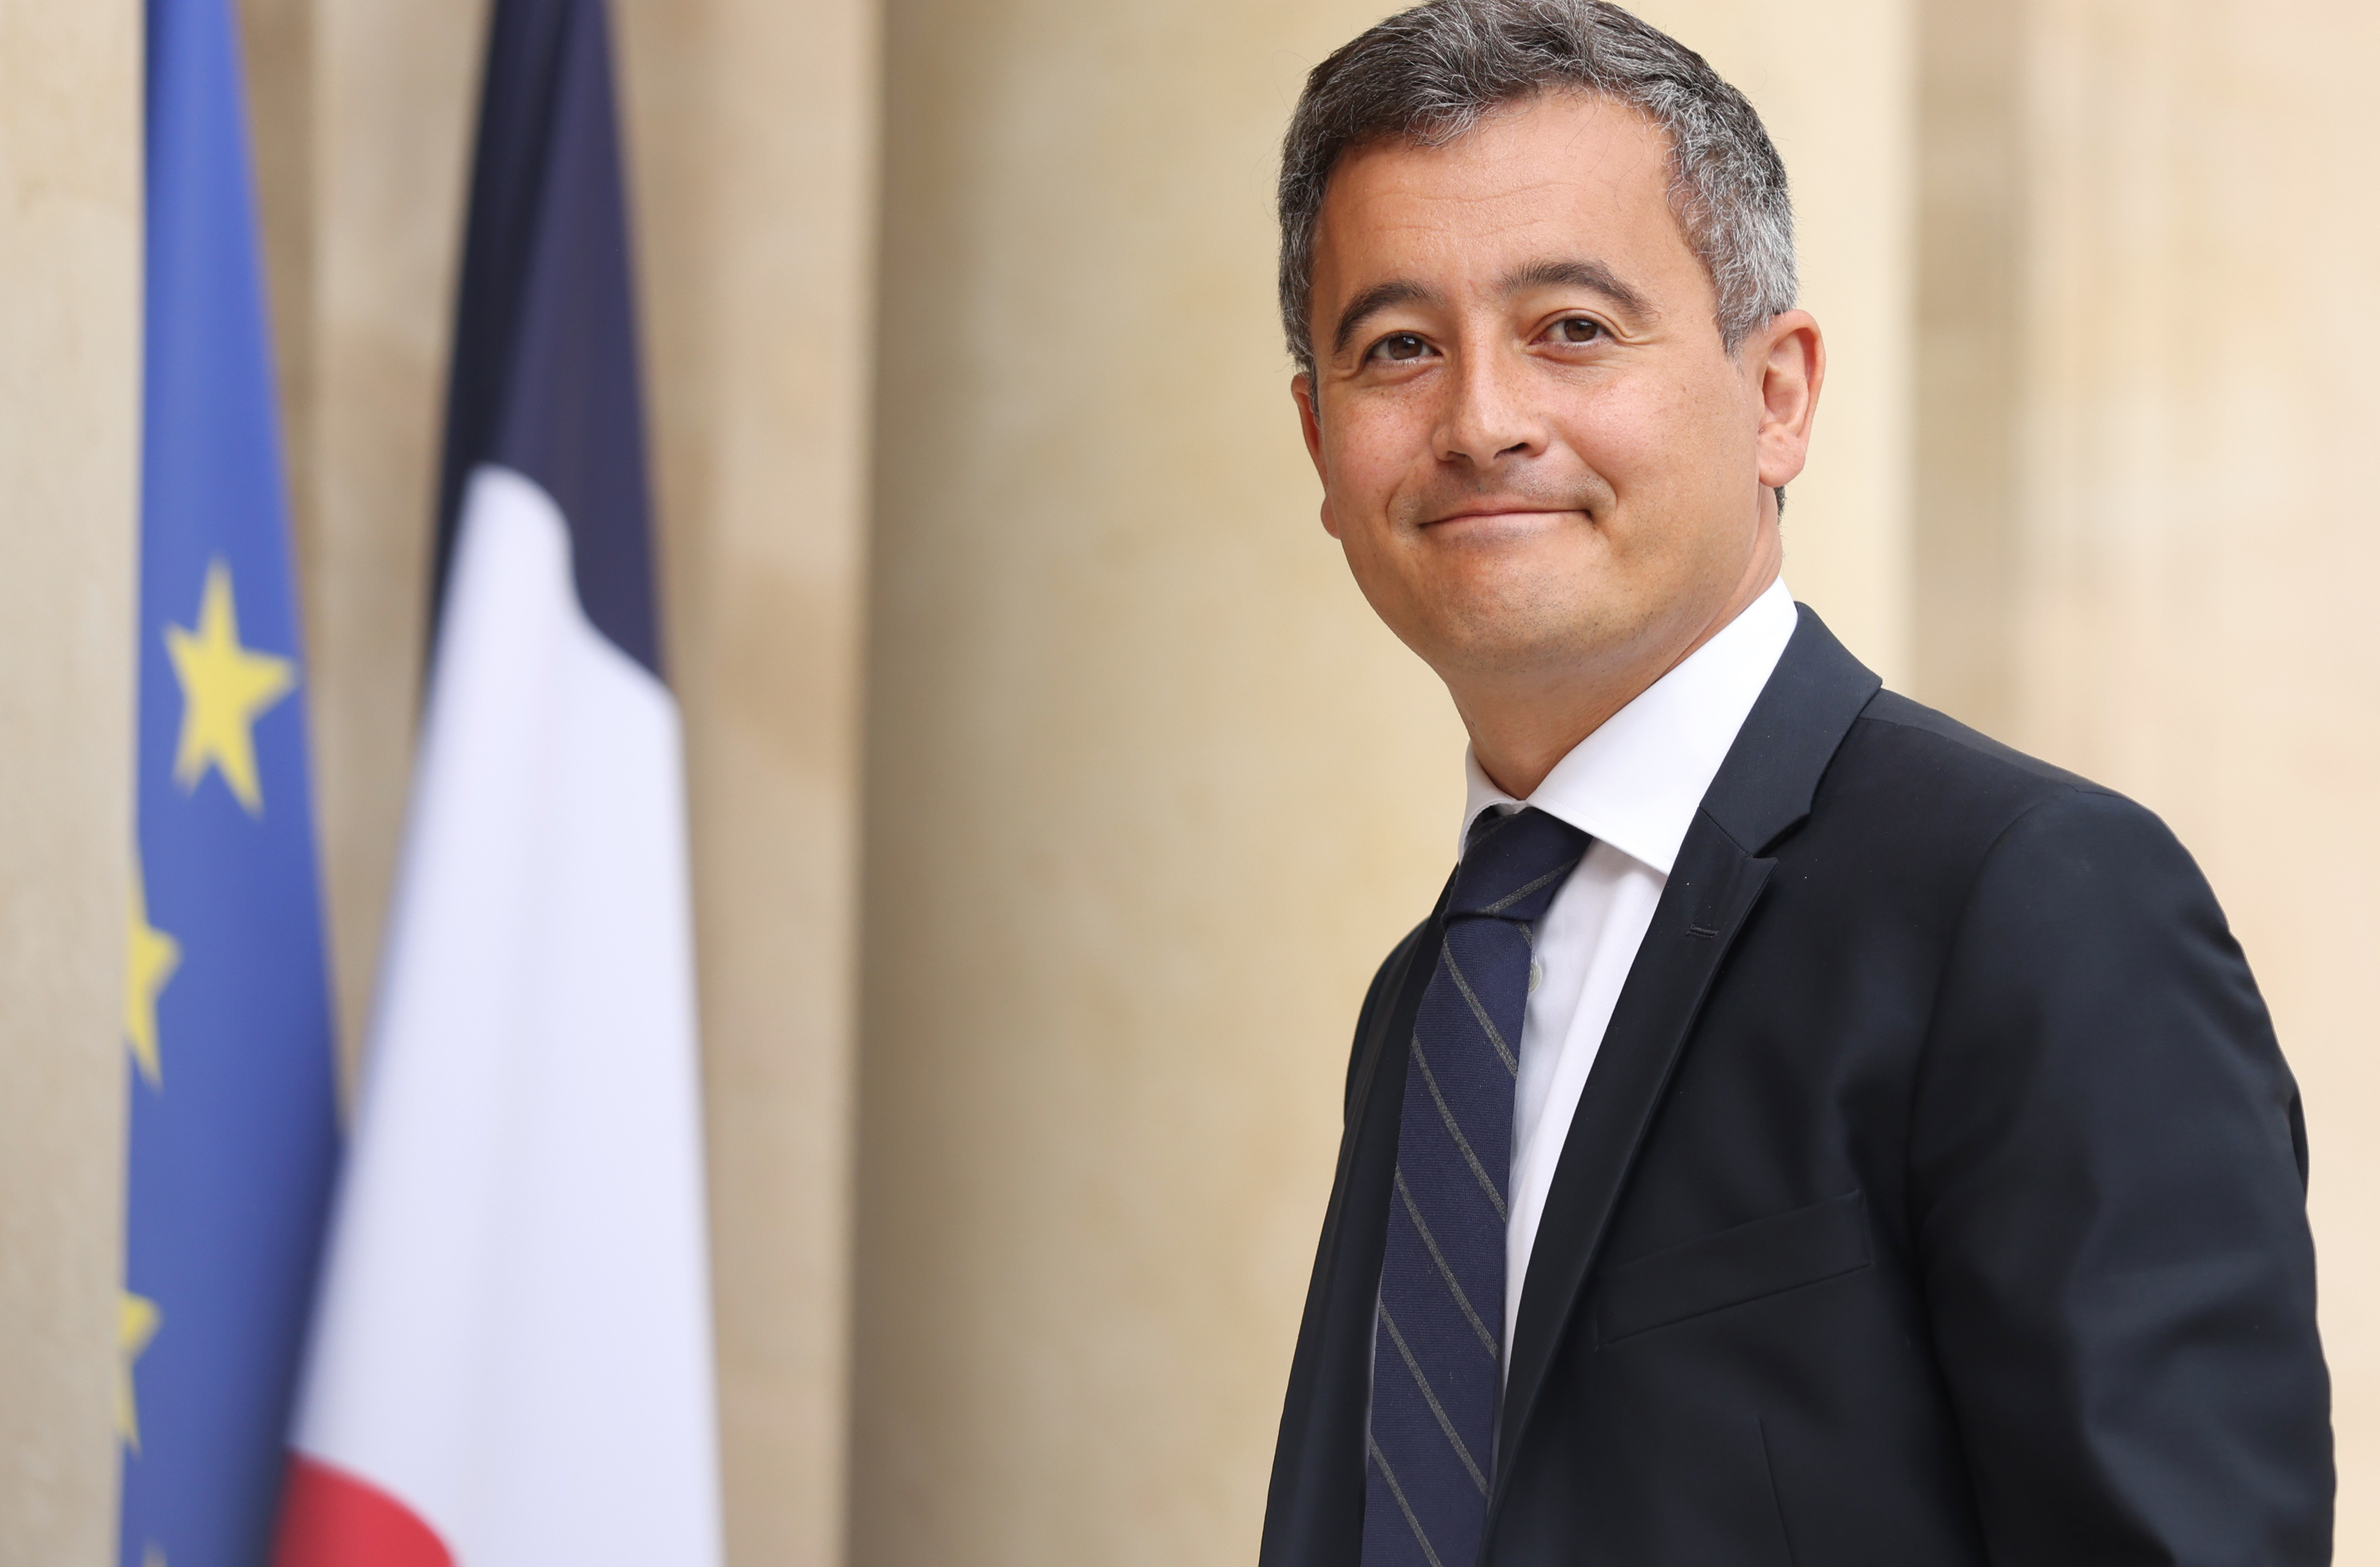 2022年5月23日，法国内政部长热拉尔德·达尔马宁抵达巴黎总统府爱丽舍宫参加新内阁首次会议。新华社记者高静摄